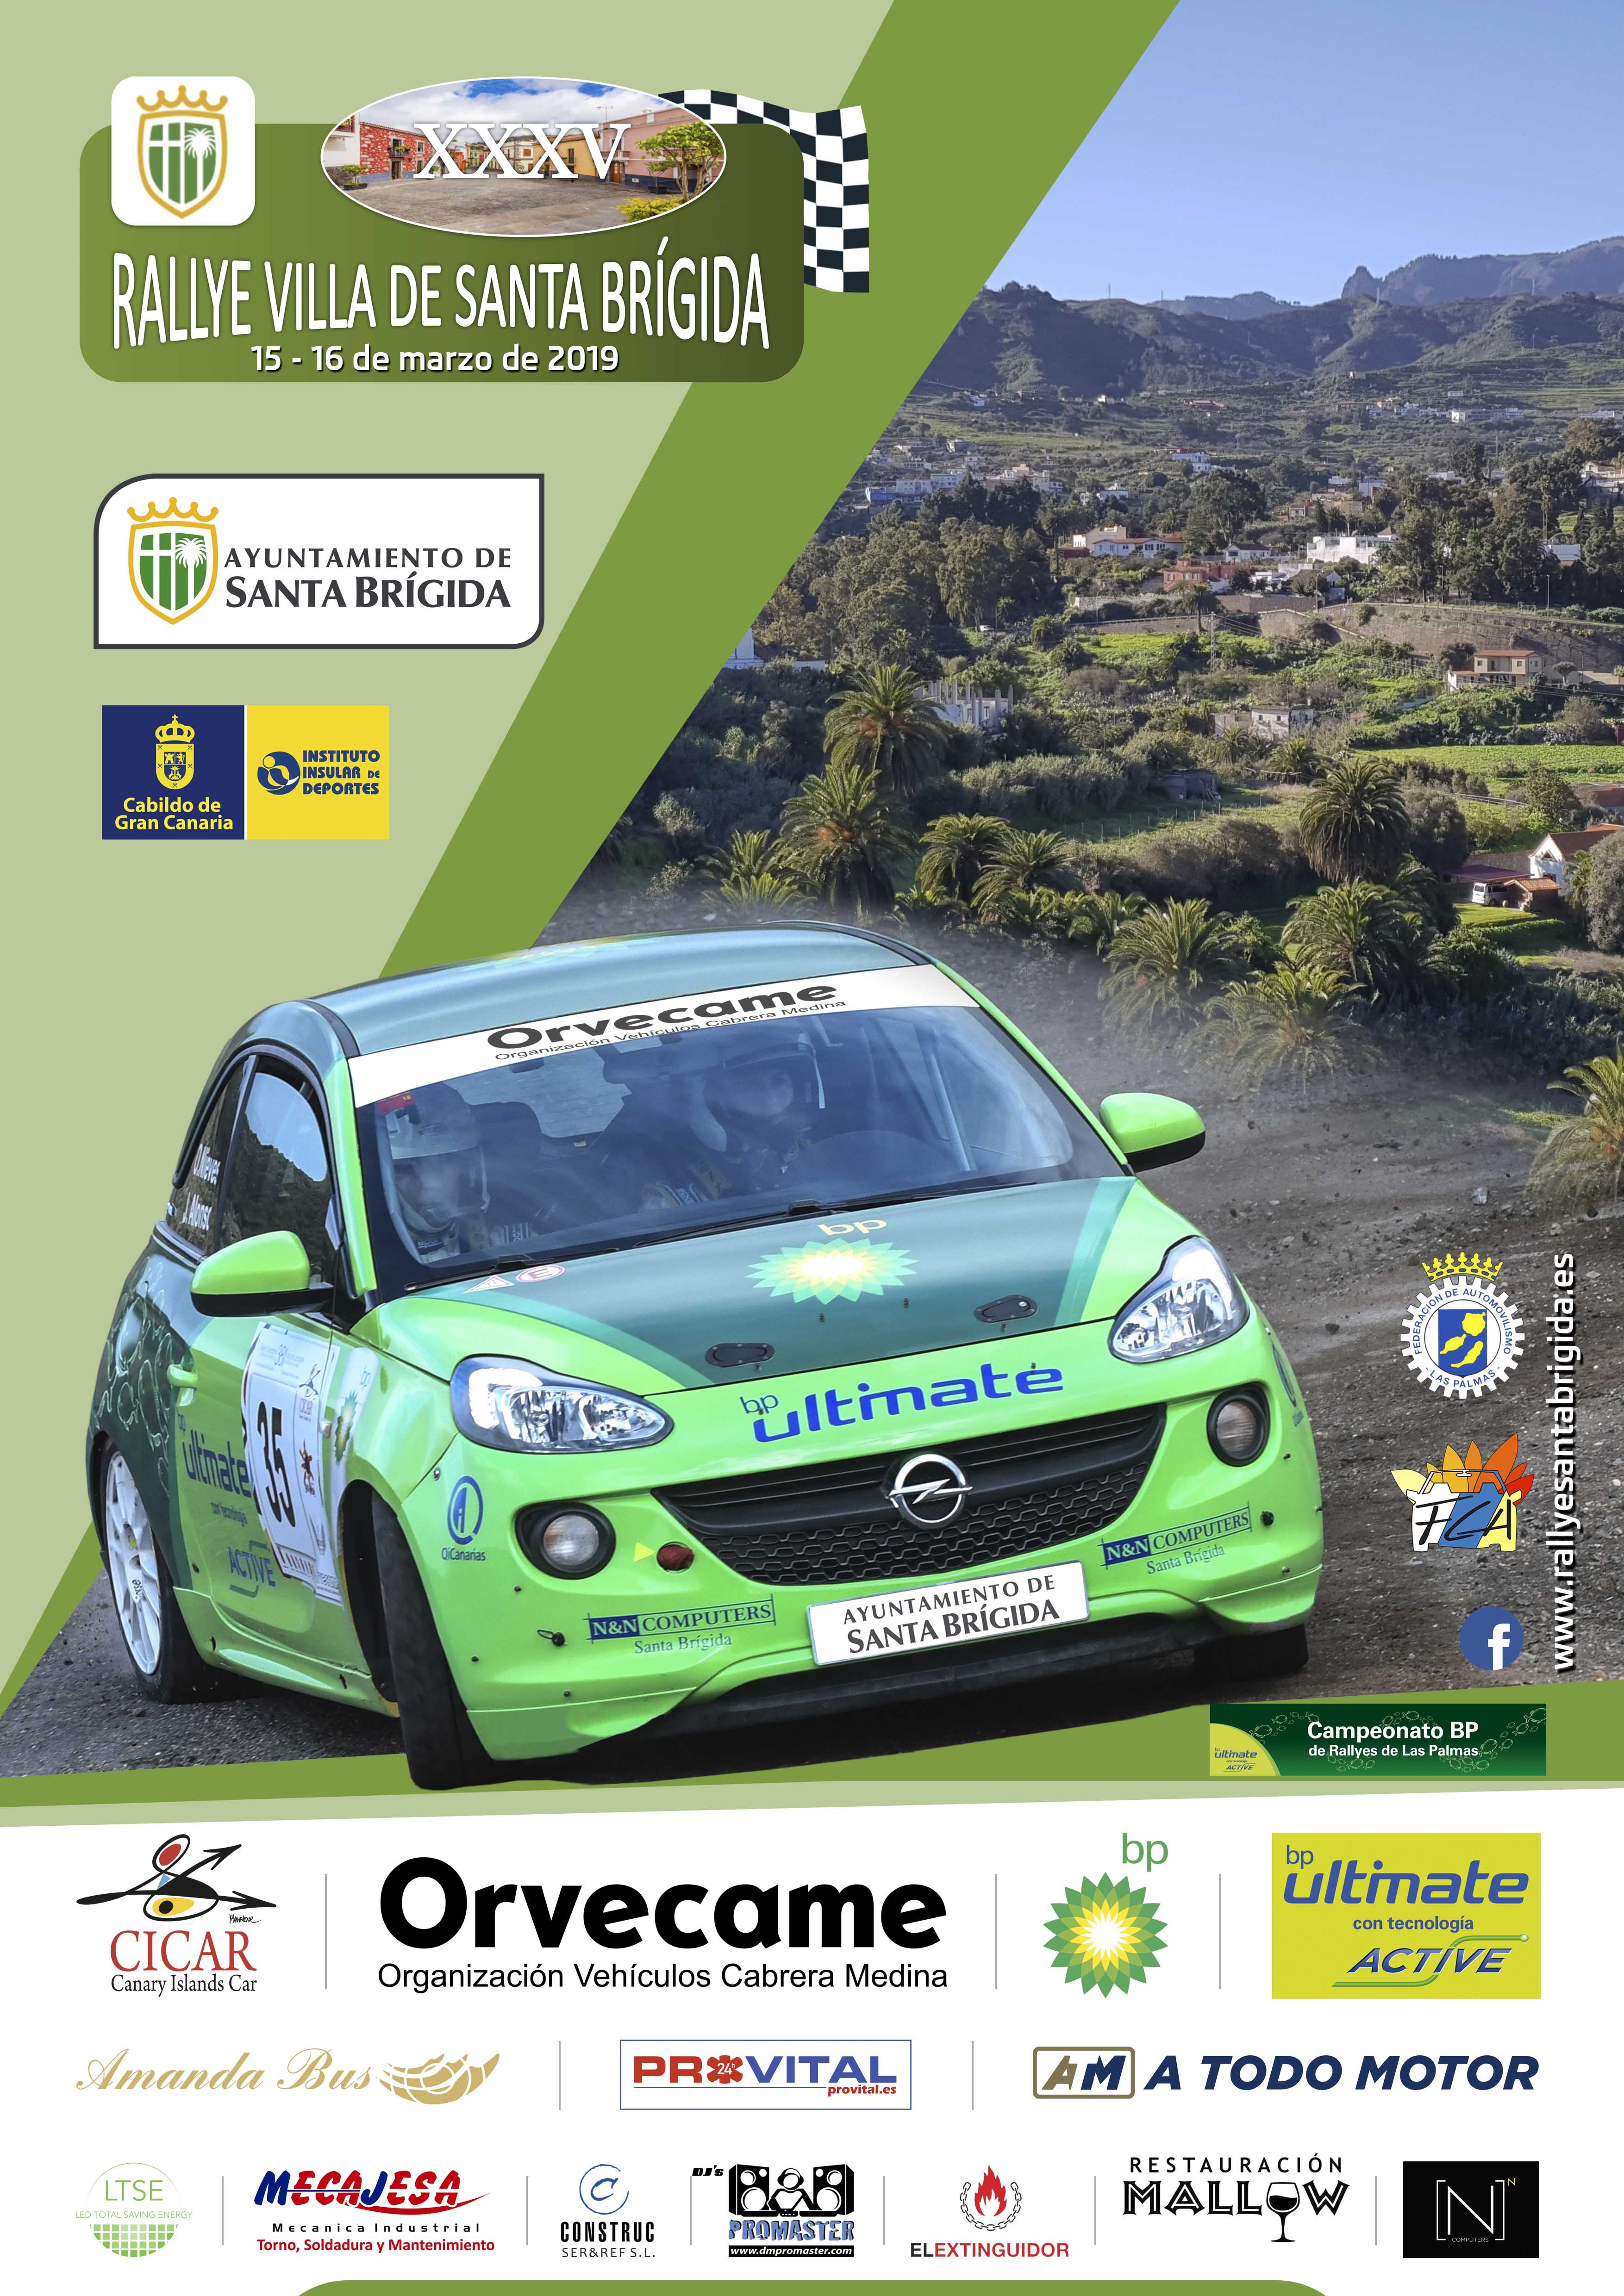 RallyACoruña - Campeonatos Regionales 2019: Información y novedades - Página 6 RVSB19b